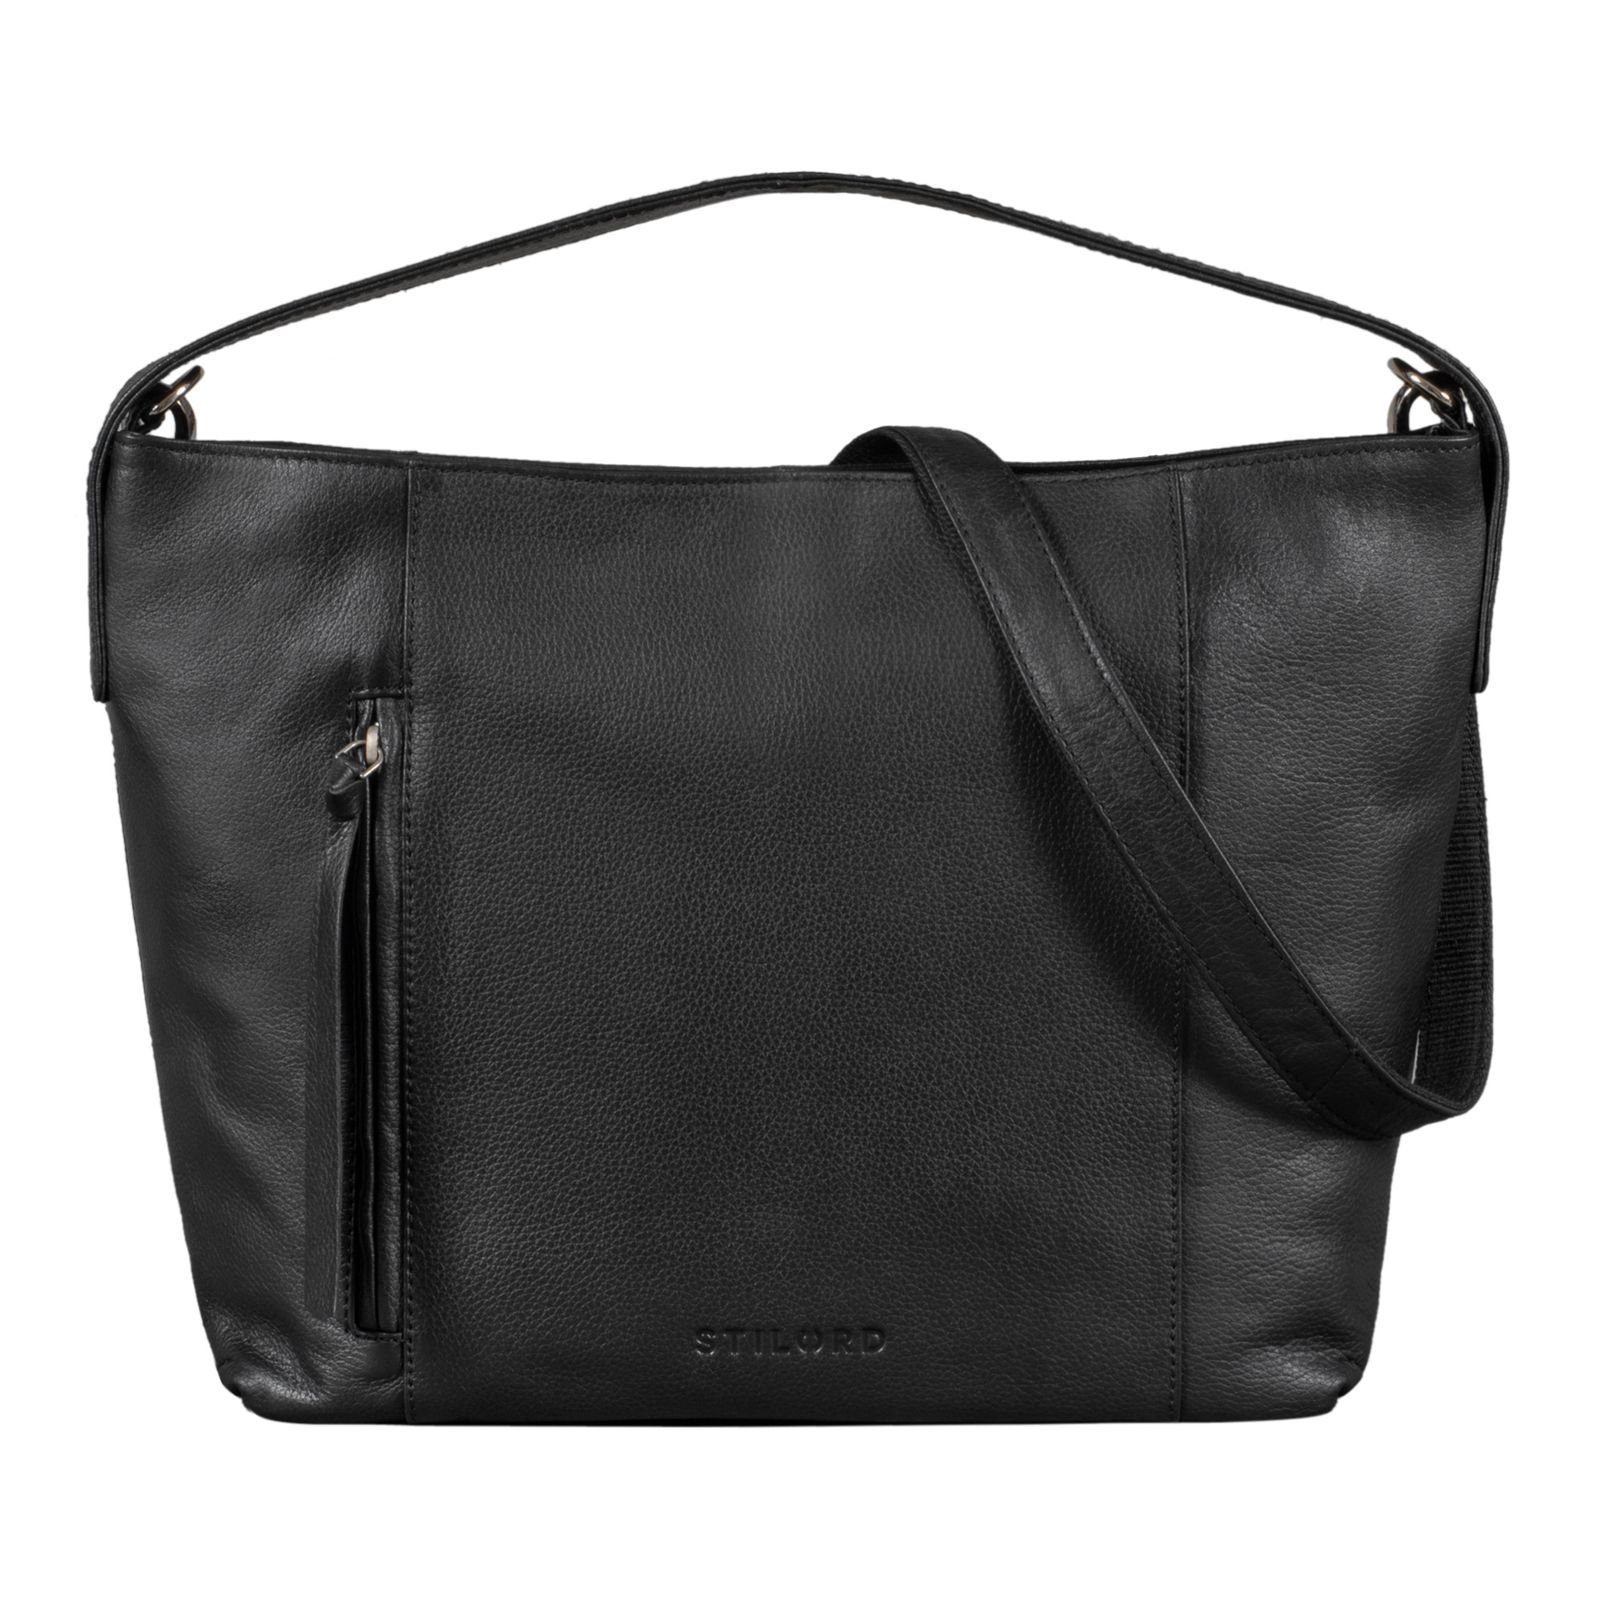 Handtasche "Marilyn" Damen Shopper STILORD schwarz Groß Leder Handtasche